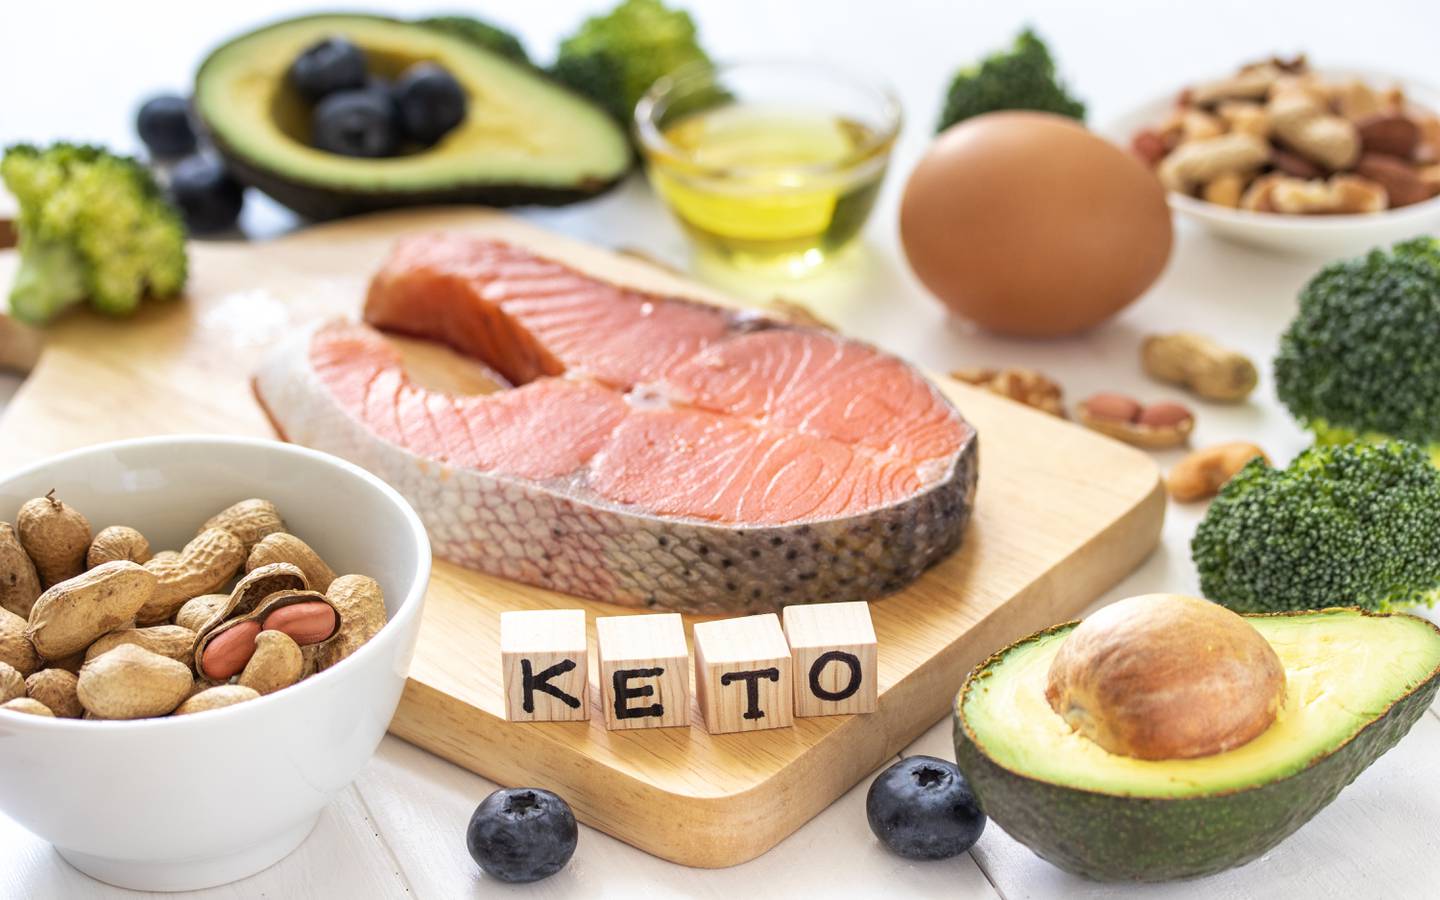 La dieta keto se centra en alimentos como aguacates y aceite de oliva (grasas saludables) junto con pollo y pescado (proteínas magras), limitando carbohidratos como pan y azúcares para mantener la cetosis.